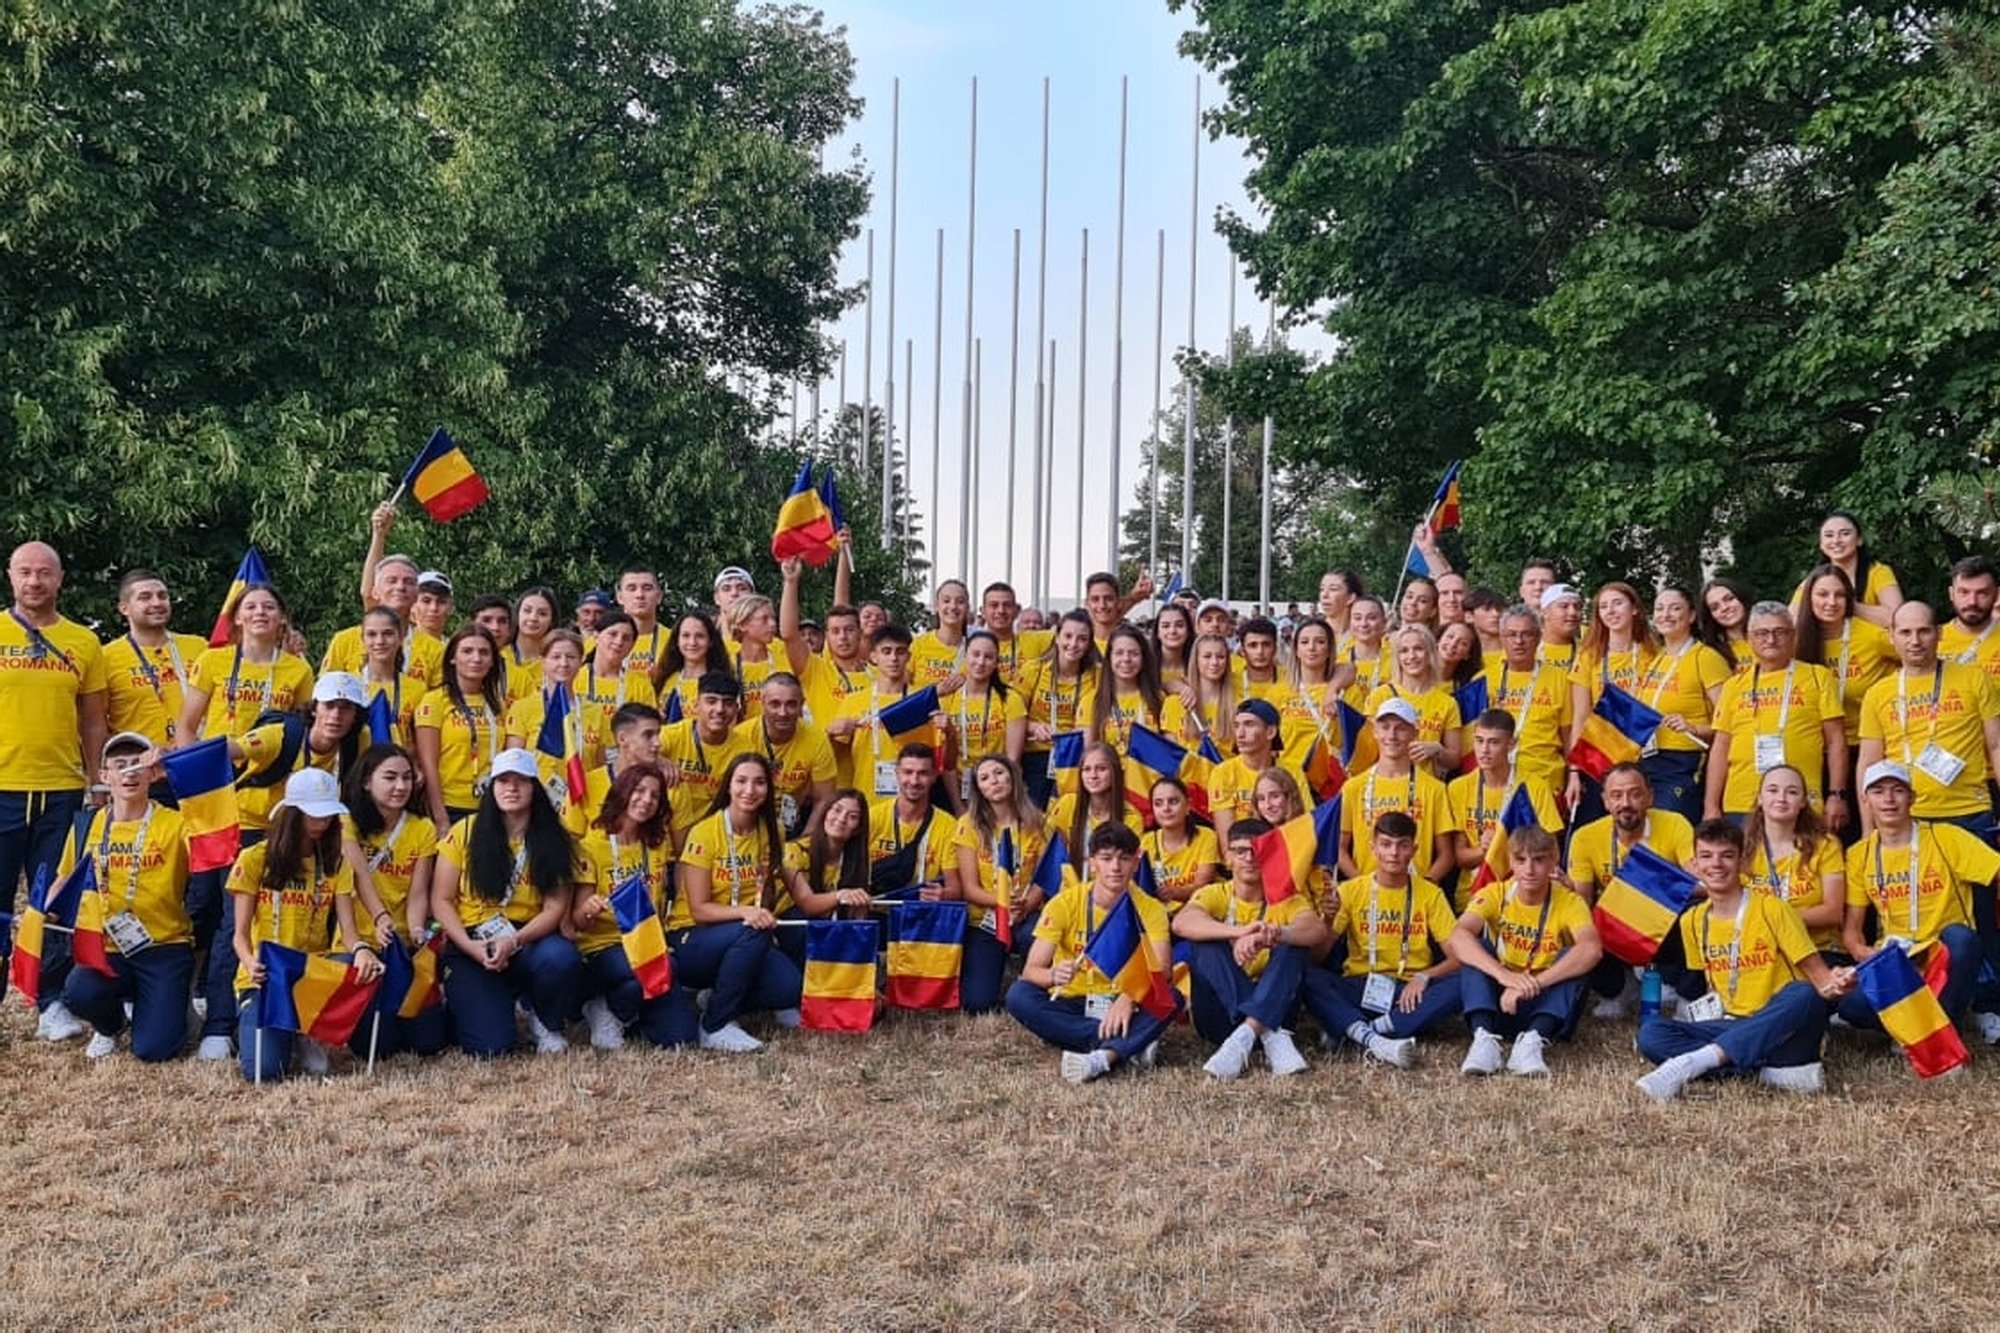  Sportivii români au obţinut medalii de argint şi bronz la FOTE Banska Bystrica